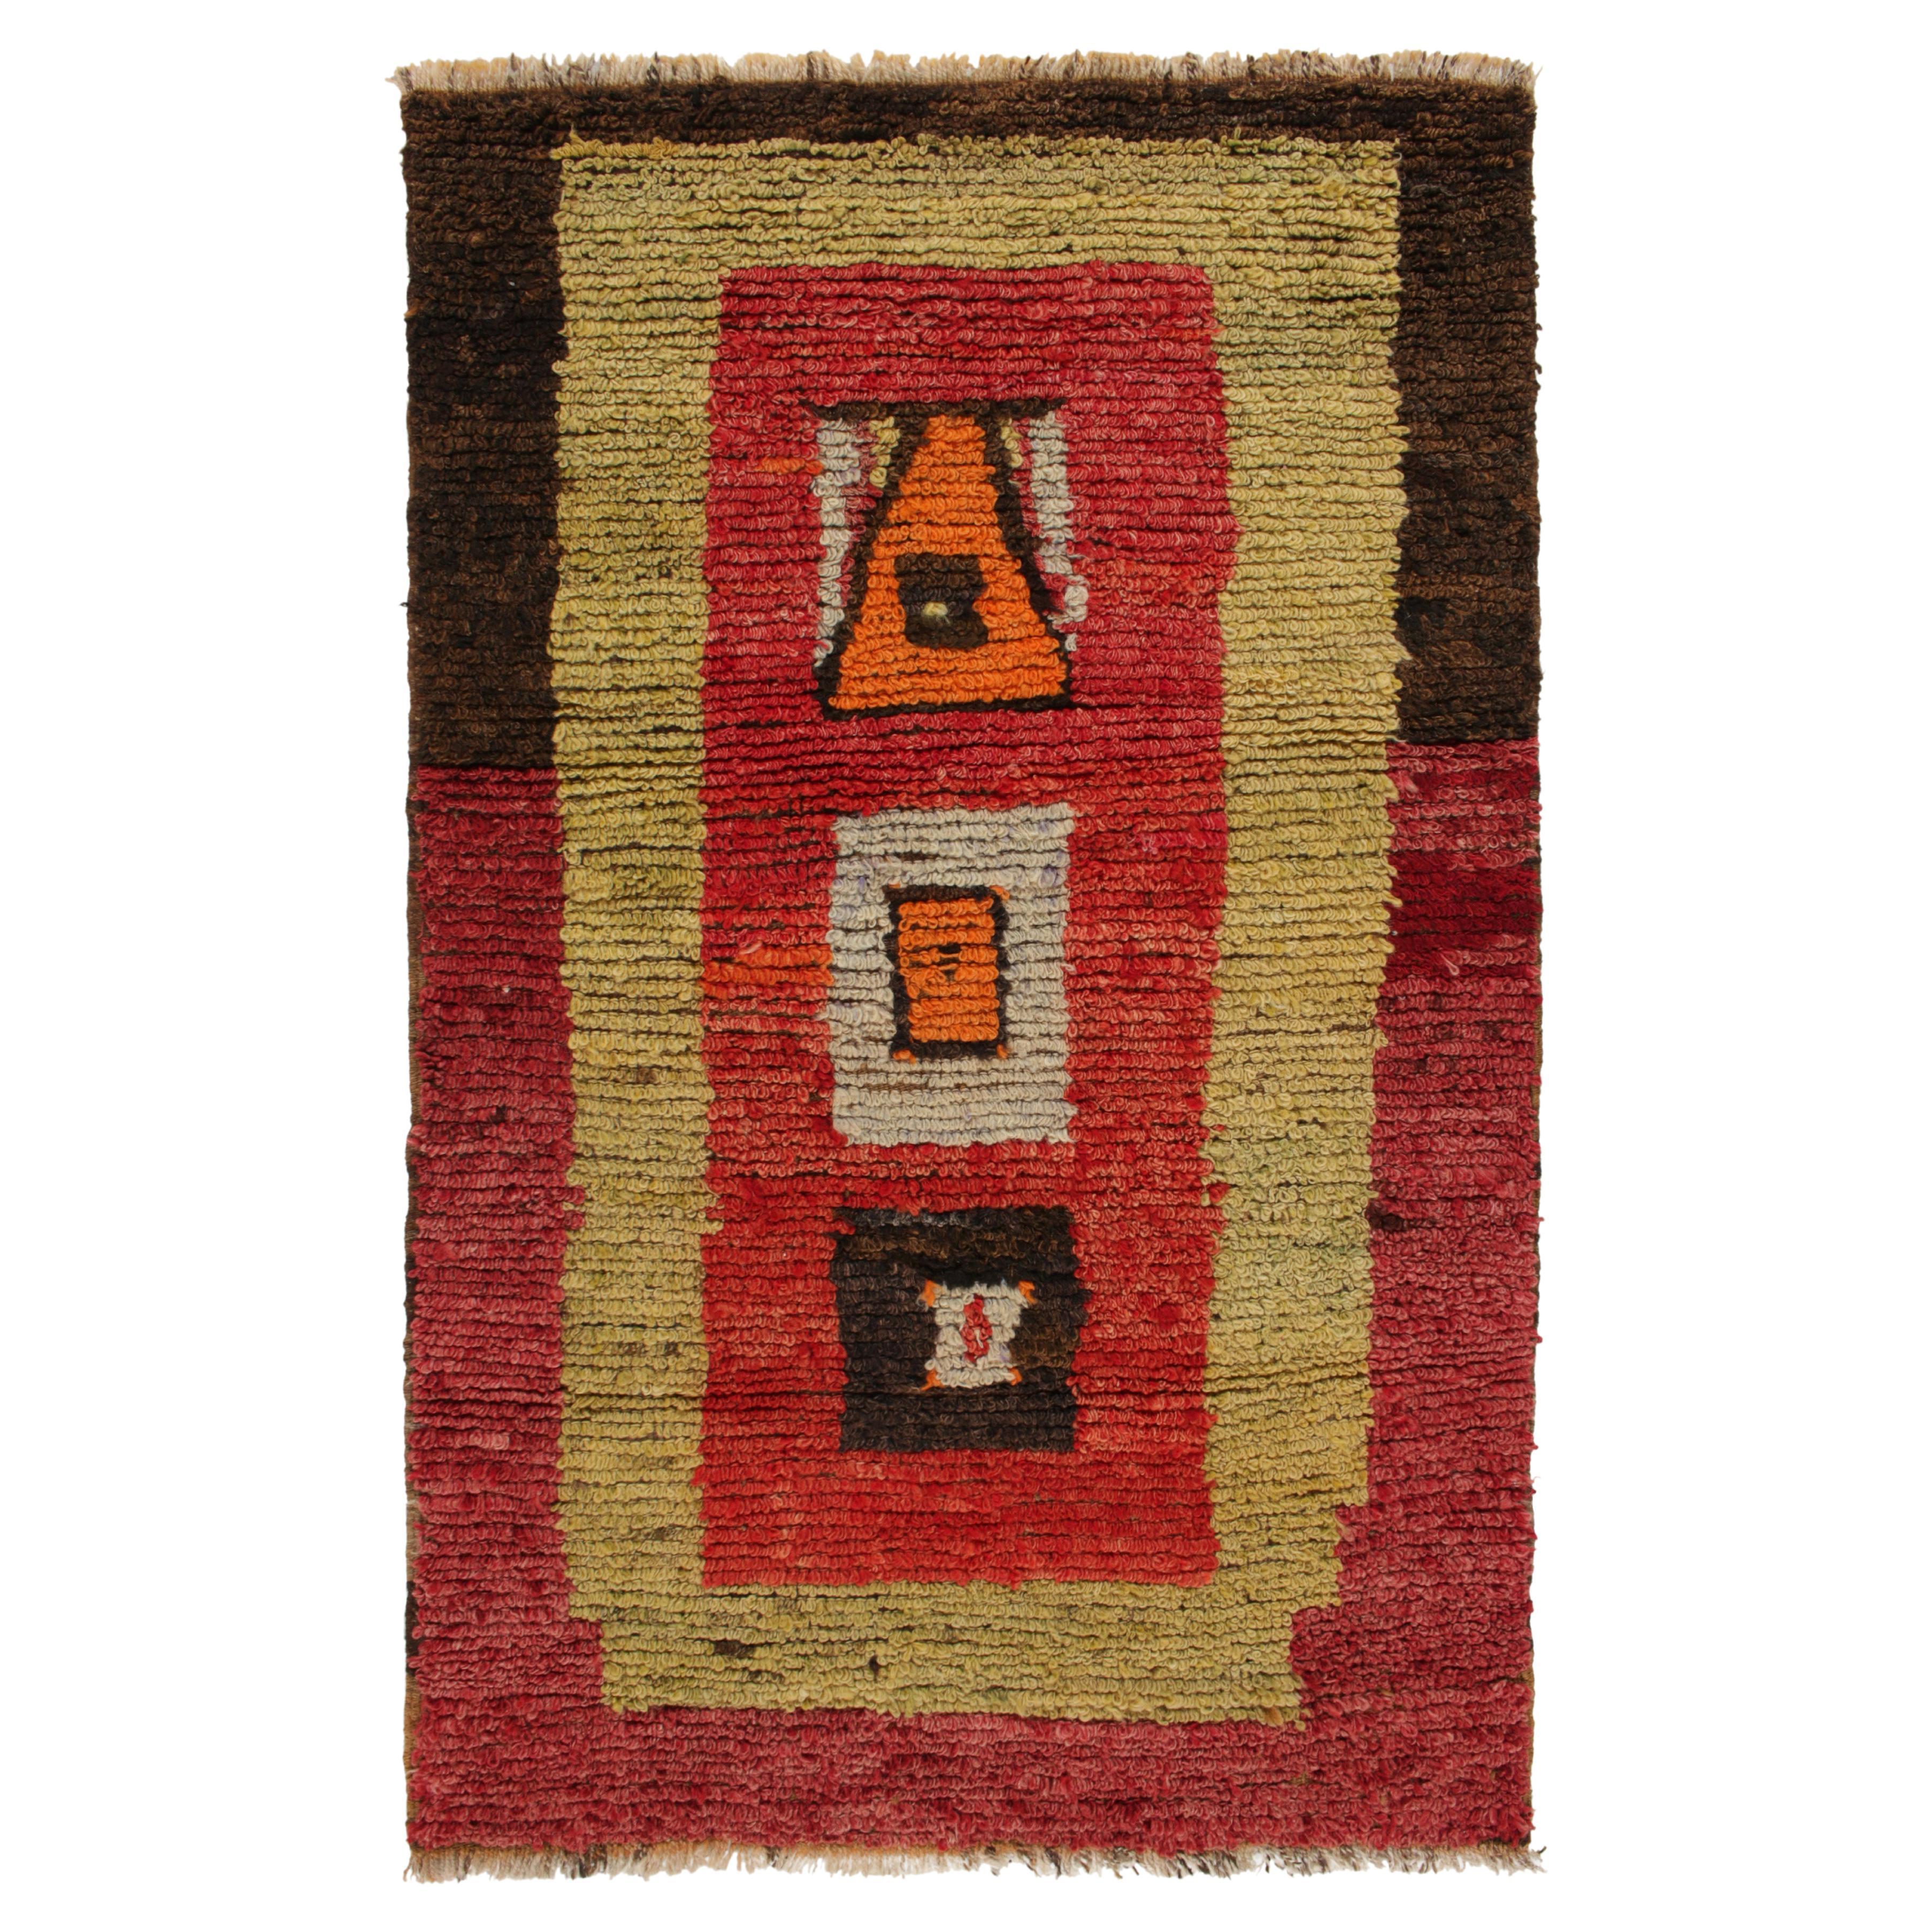 1950s Vintage Tulu Rug in Red, Yellow, Brown Geometric Pattern by Rug & Kilim